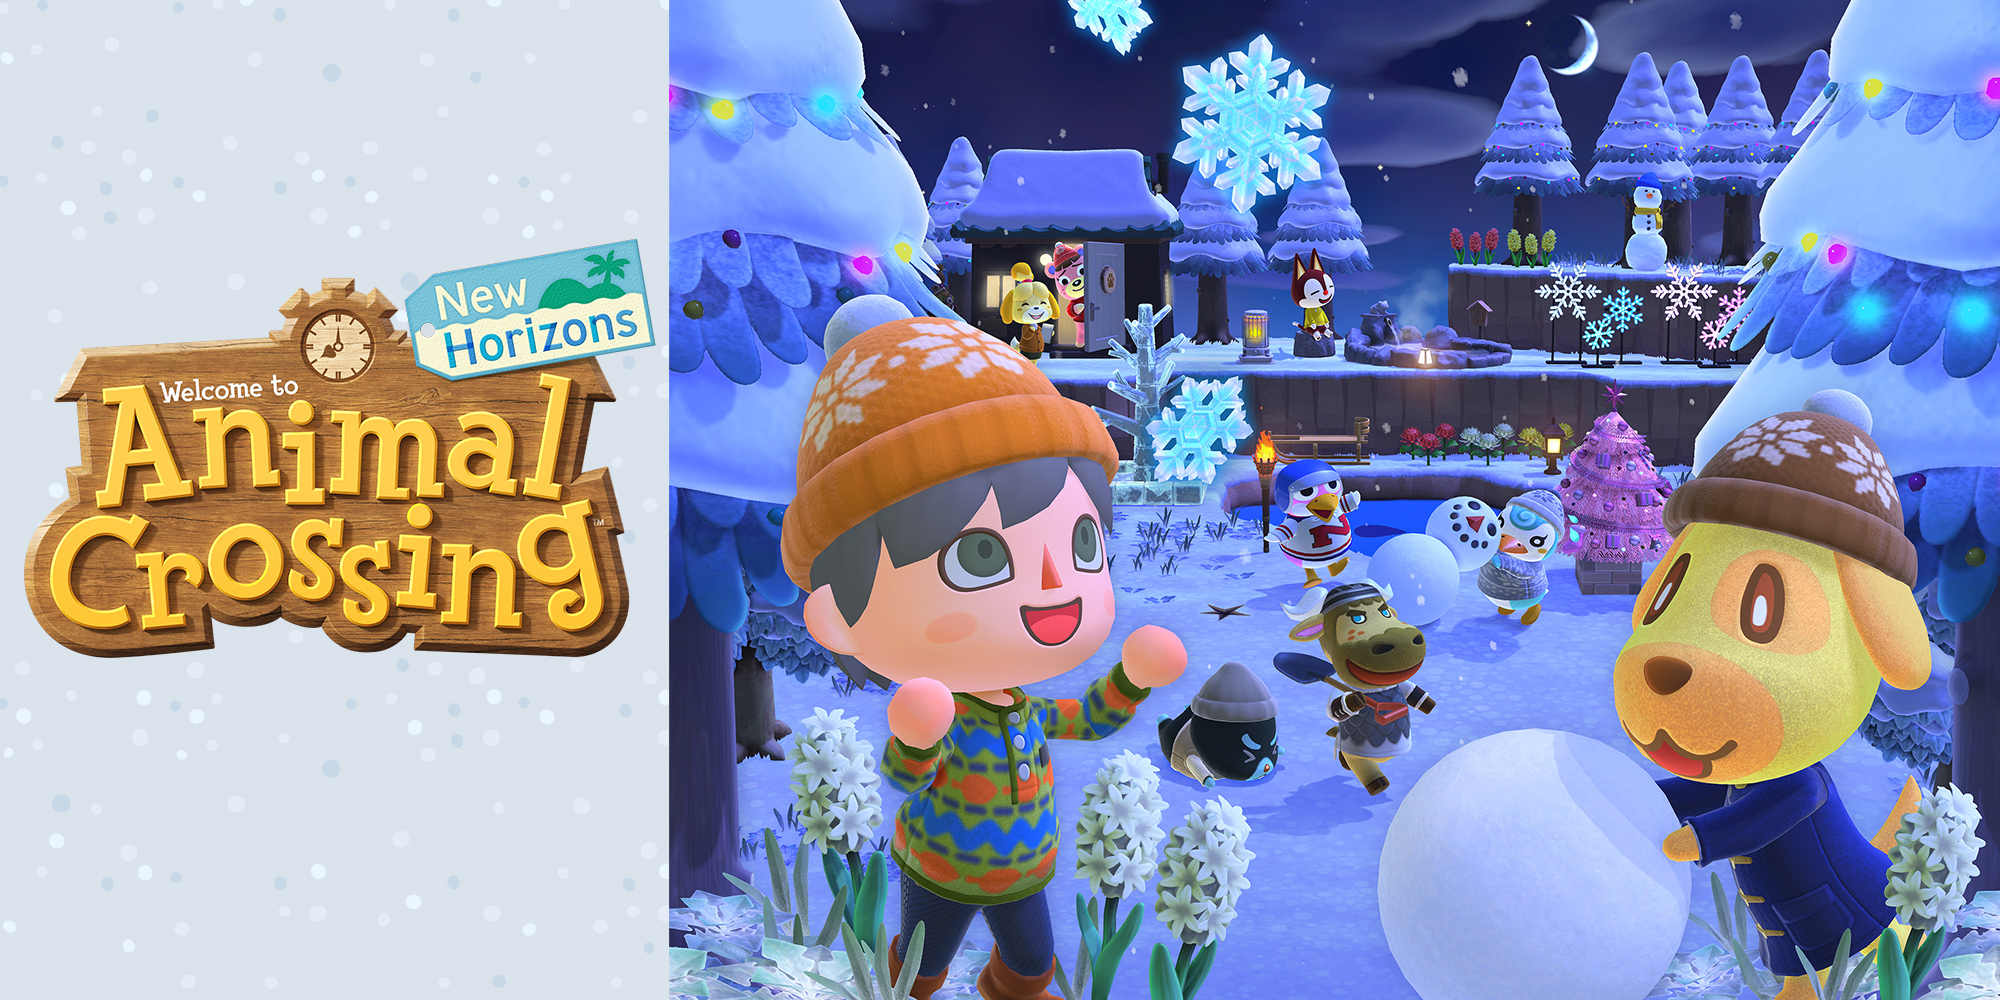 Maak er een gezellige winter van in Animal Crossing: New Horizons!